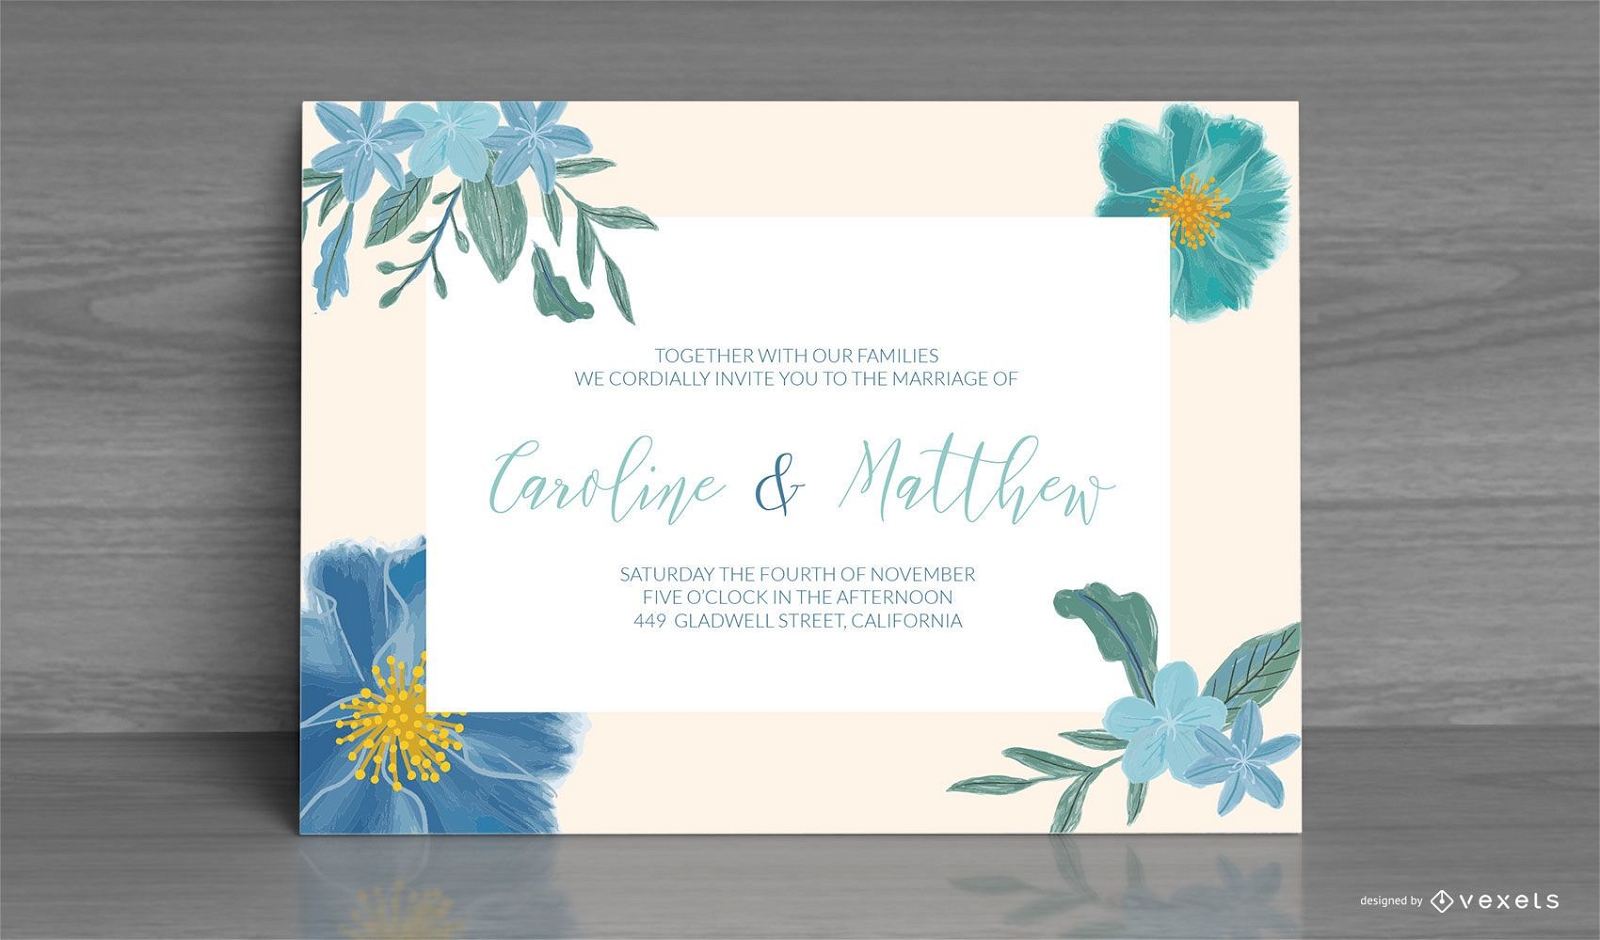 Design de cartão de convite de casamento floral